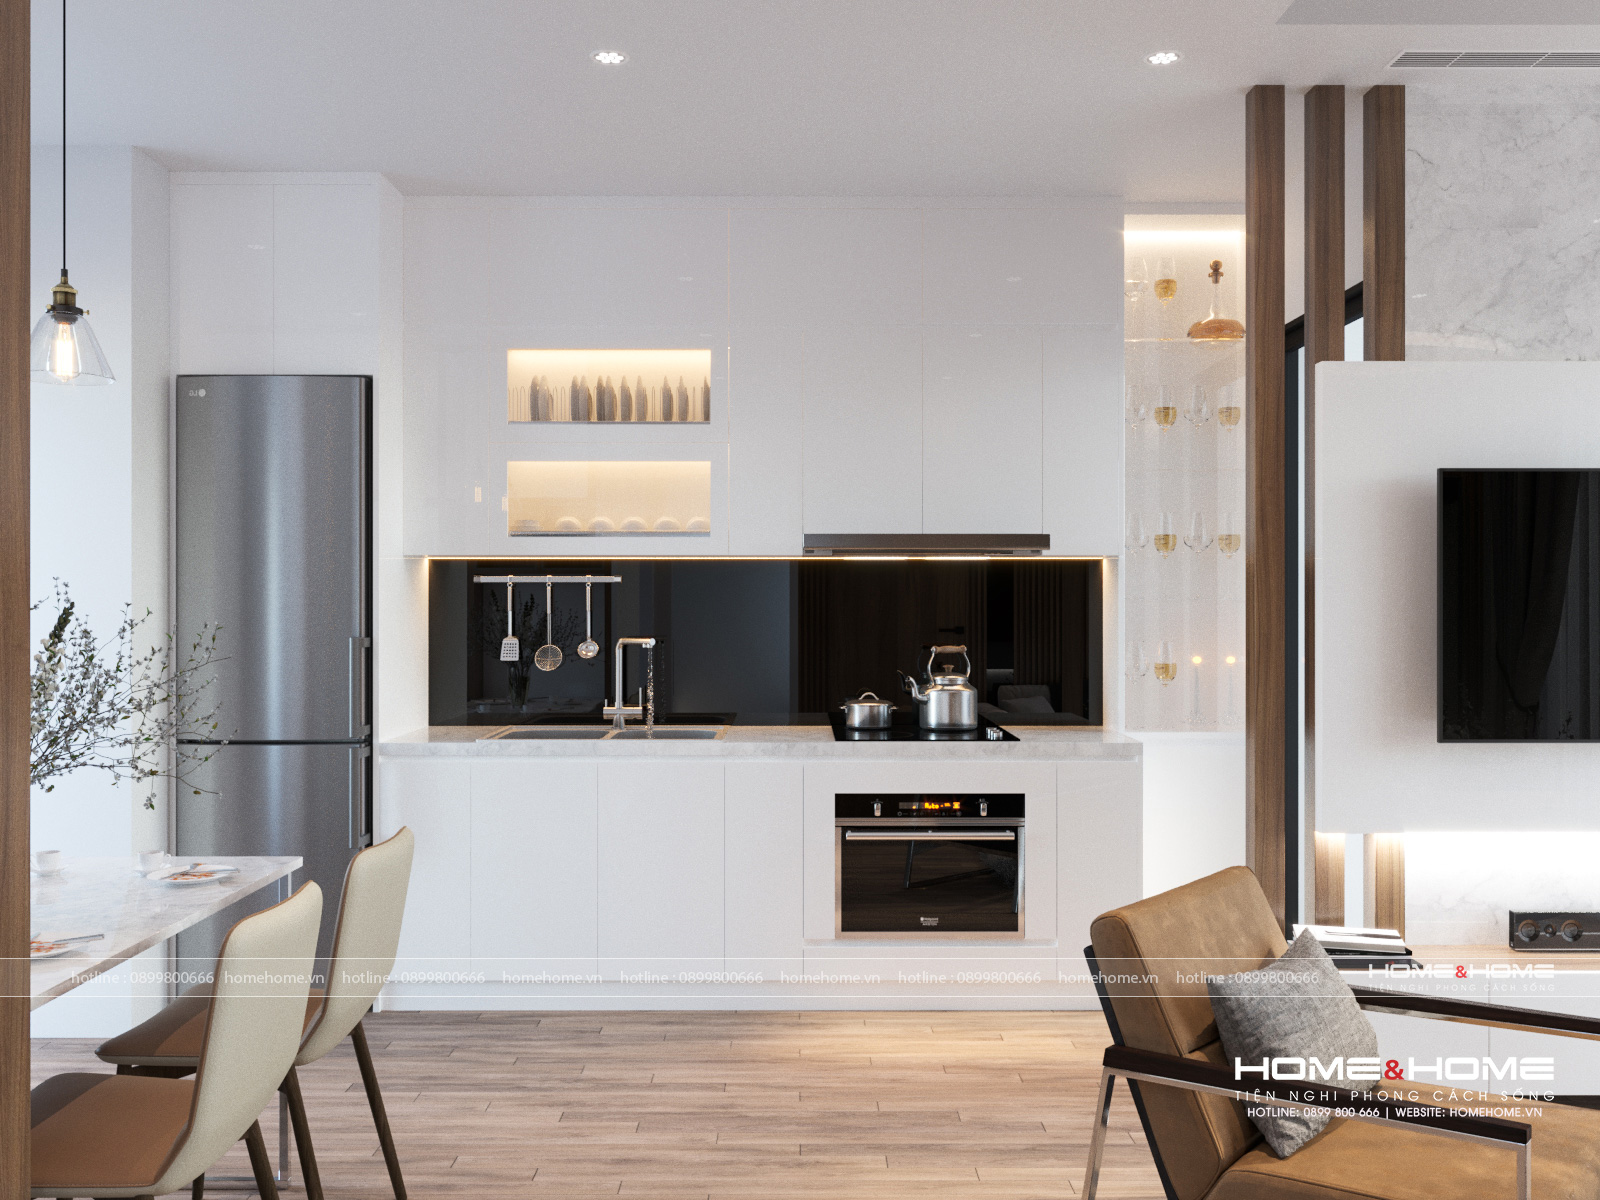 Tạo ra một không gian sống tiện nghi và thư giãn tuyệt đối với Thiết kế nội thất phòng bếp tinh tế. Chỉn chu mọi chi tiết và đảm bảo cảm giác đầy đủ về công năng và thẩm mỹ.